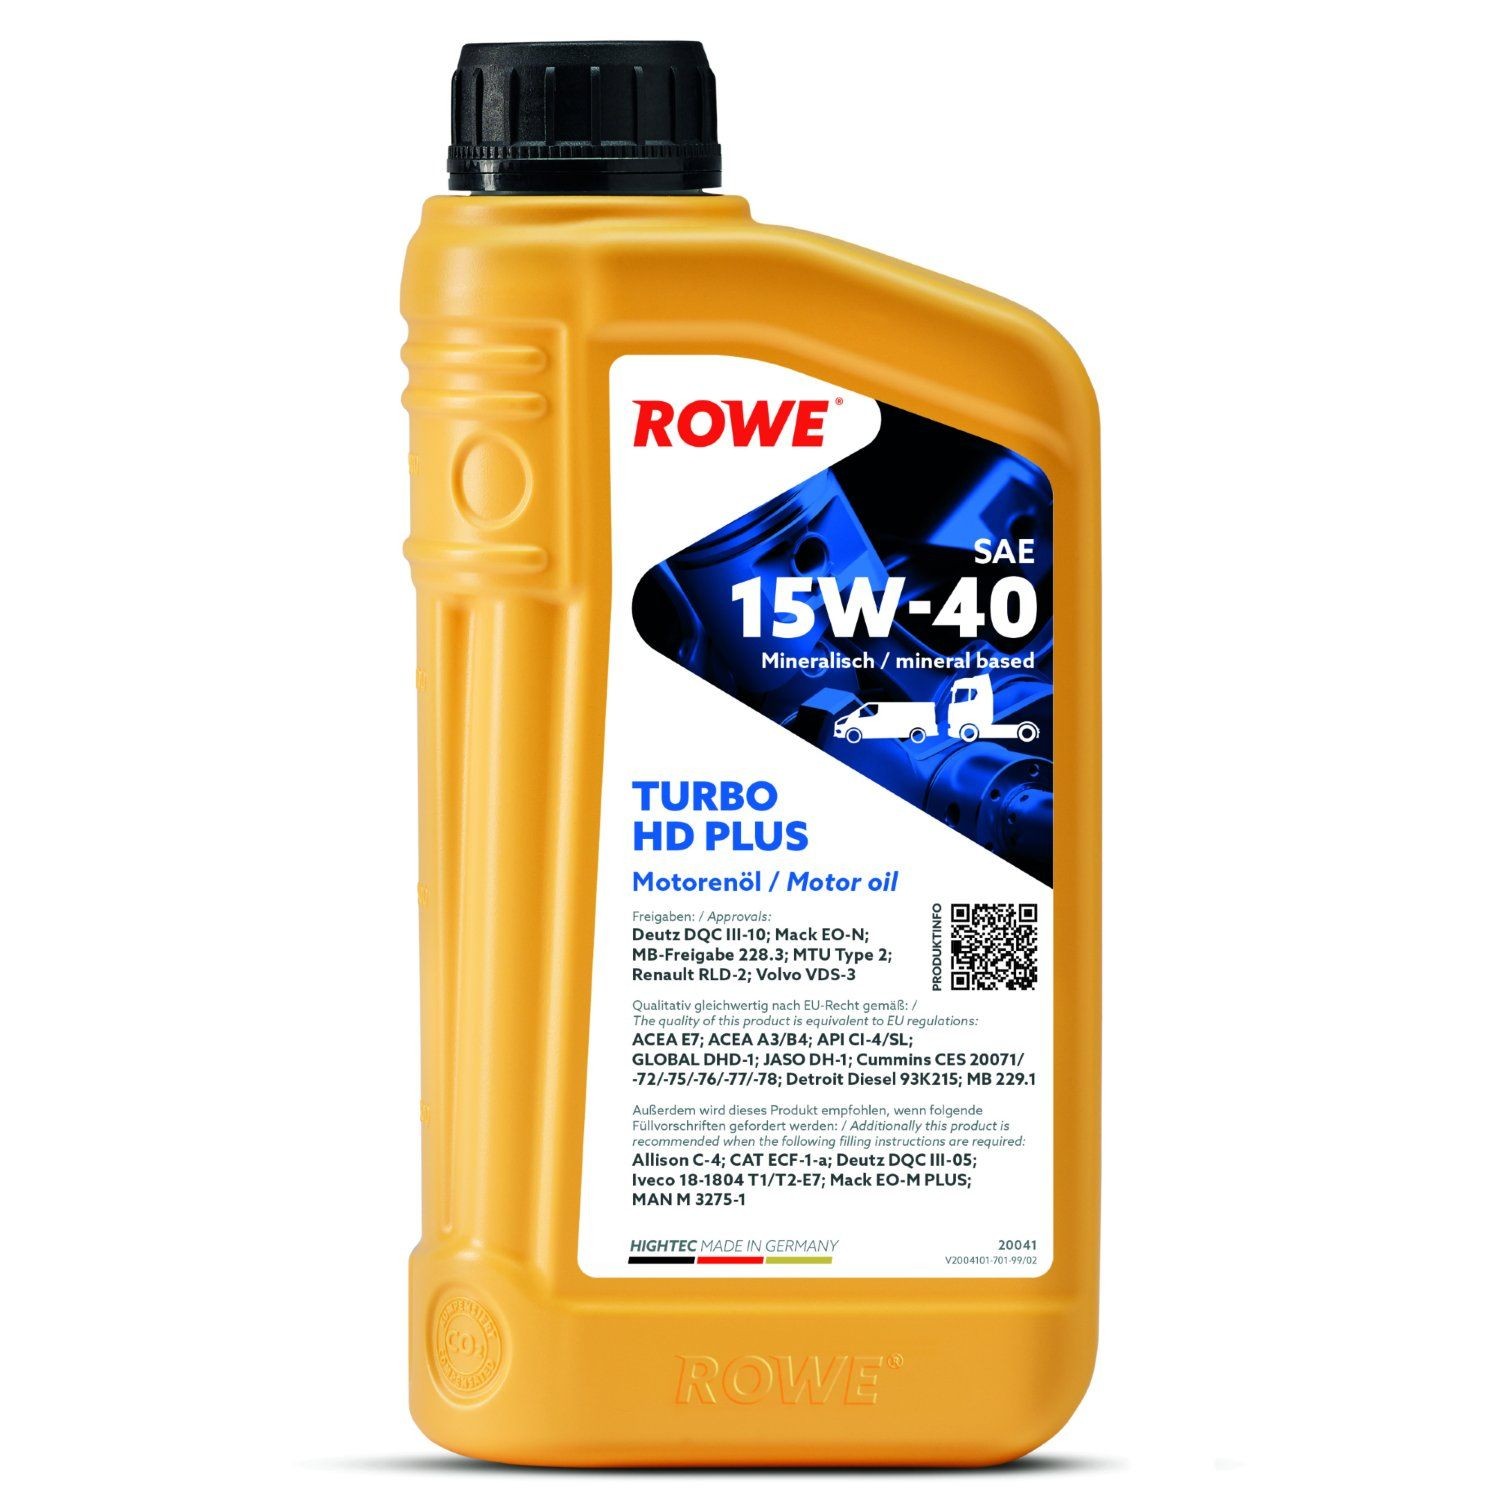 Car oil ROWE 15W-40, 1l, Mineral Oil longlife 20041-0010-99